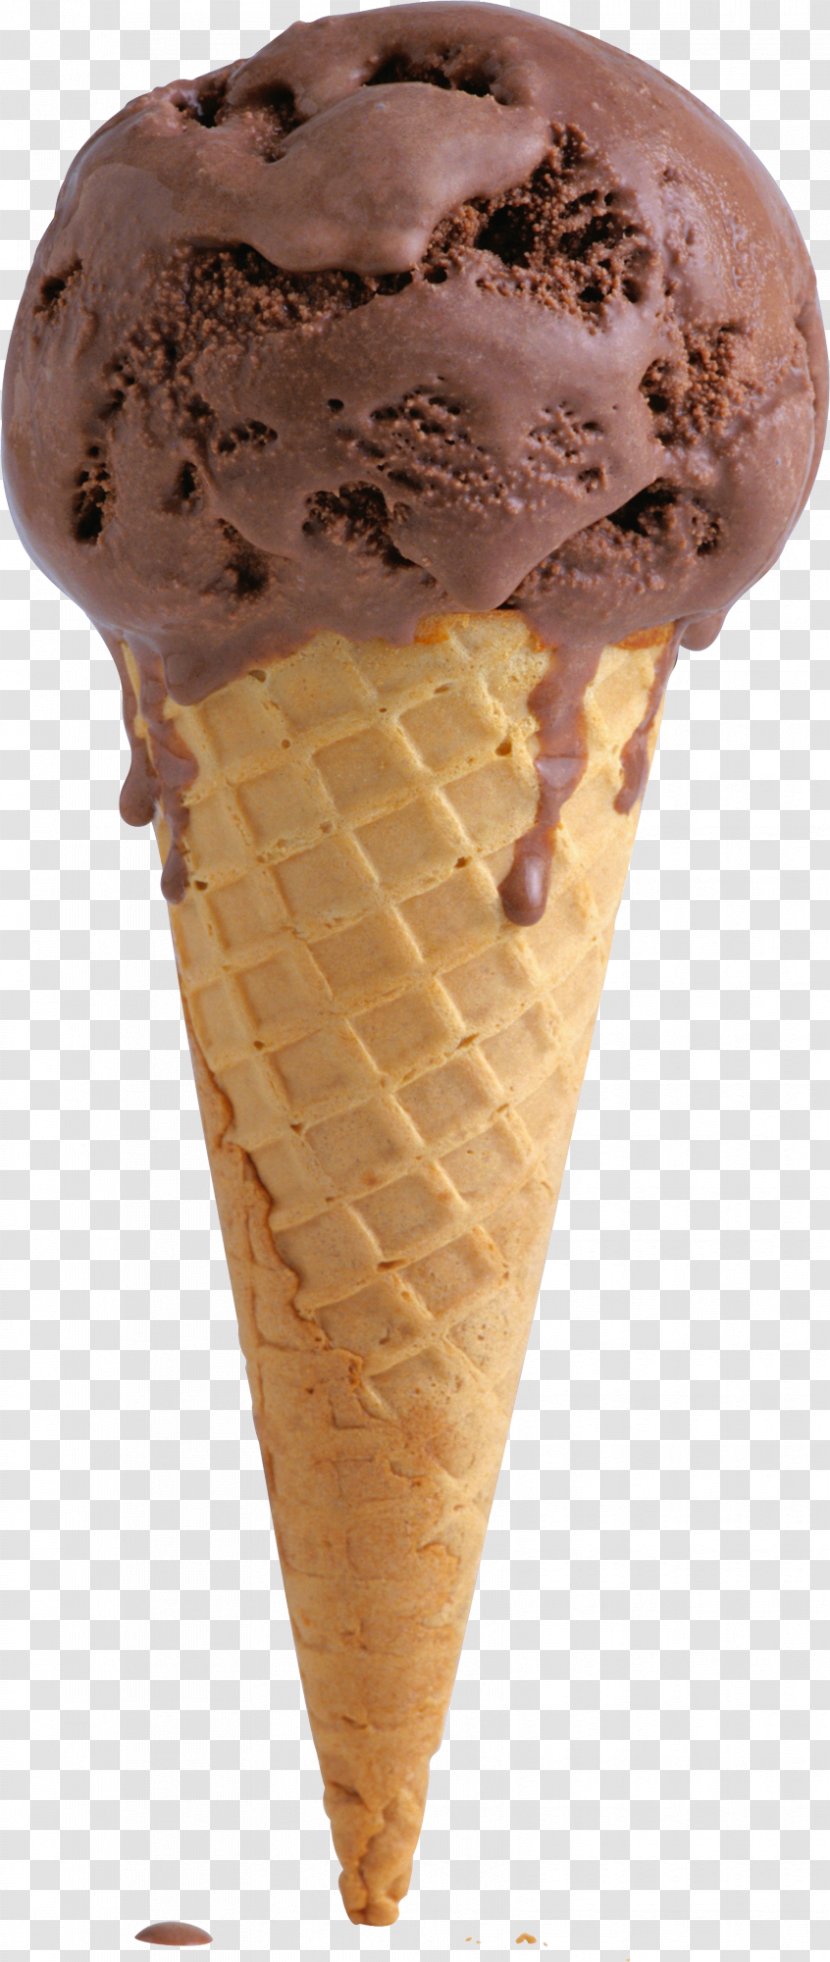 Ice Cream Cones Milkshake Chocolate Truffle - Sundae Transparent PNG